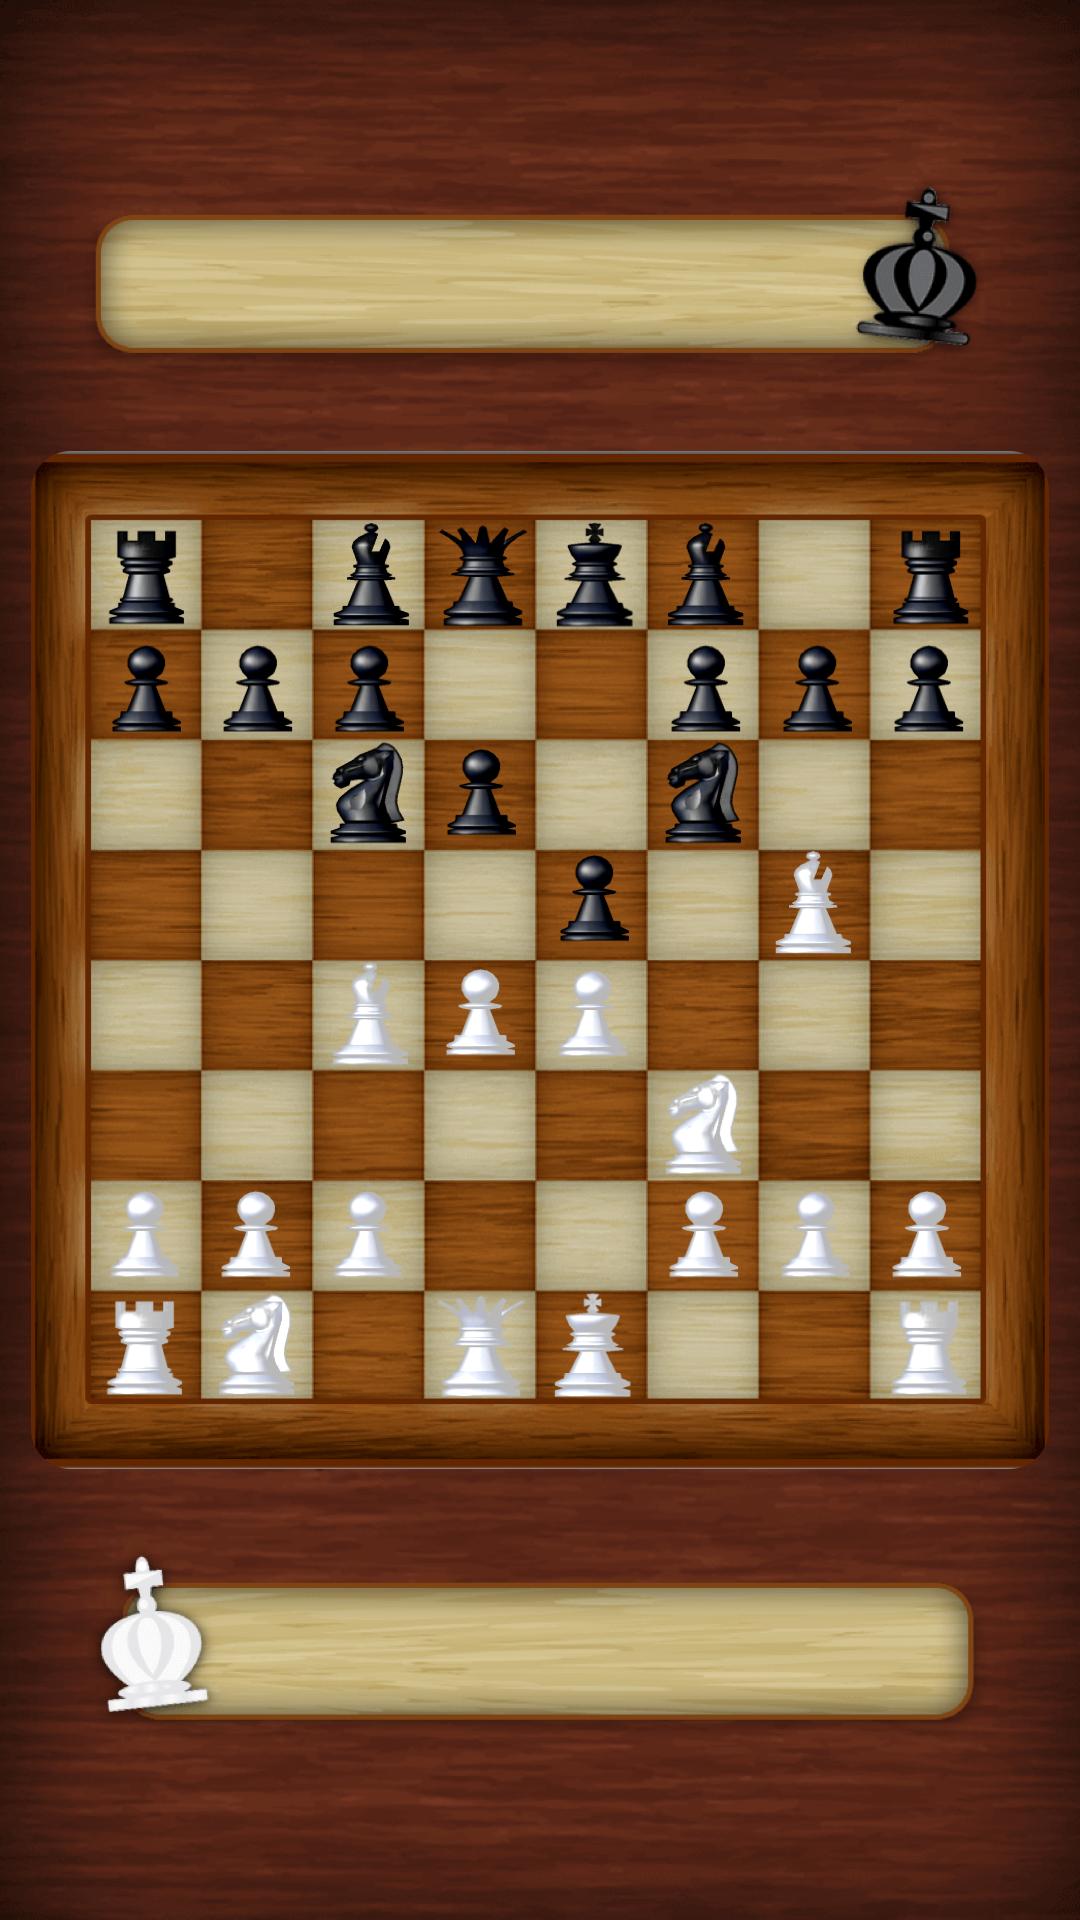 Chess Strategy board game 3.0.6 Screenshot 12